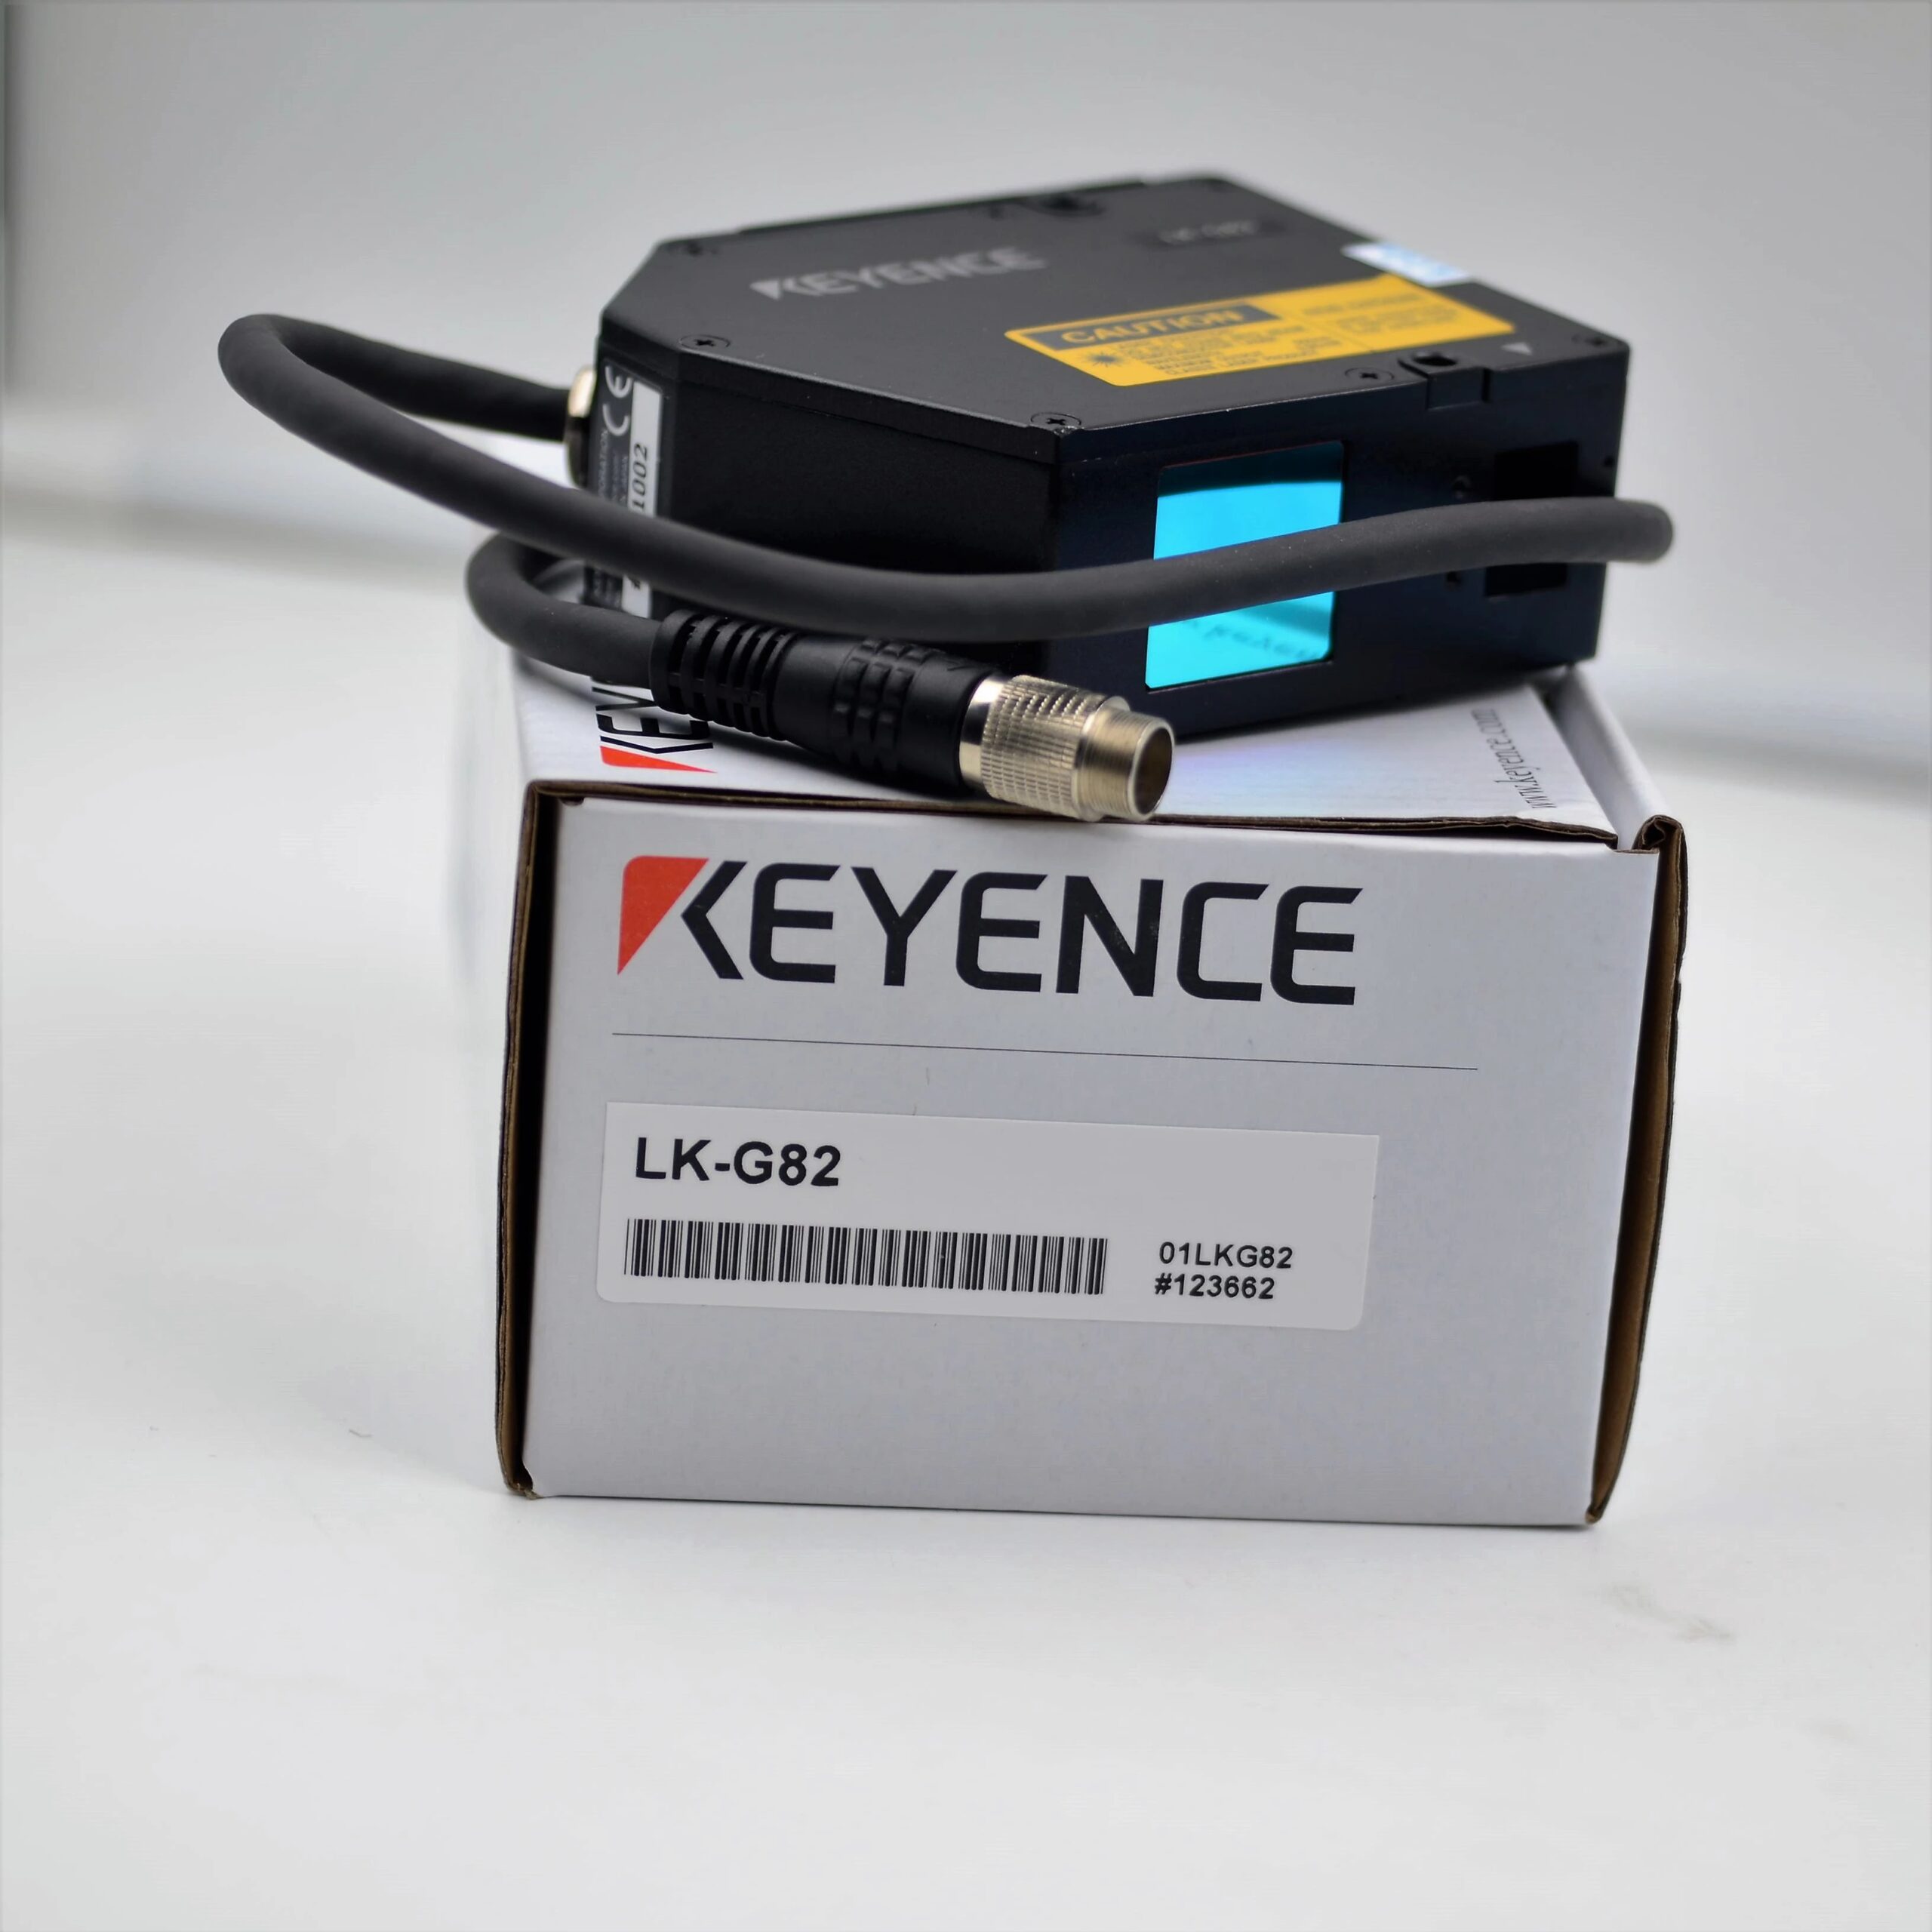 sensor head LK-G30A LK-G30 LK-G35 LK-G37 LK-G80A LK-G82 LK-G85 LK-G87 LK-G152 LK-G155